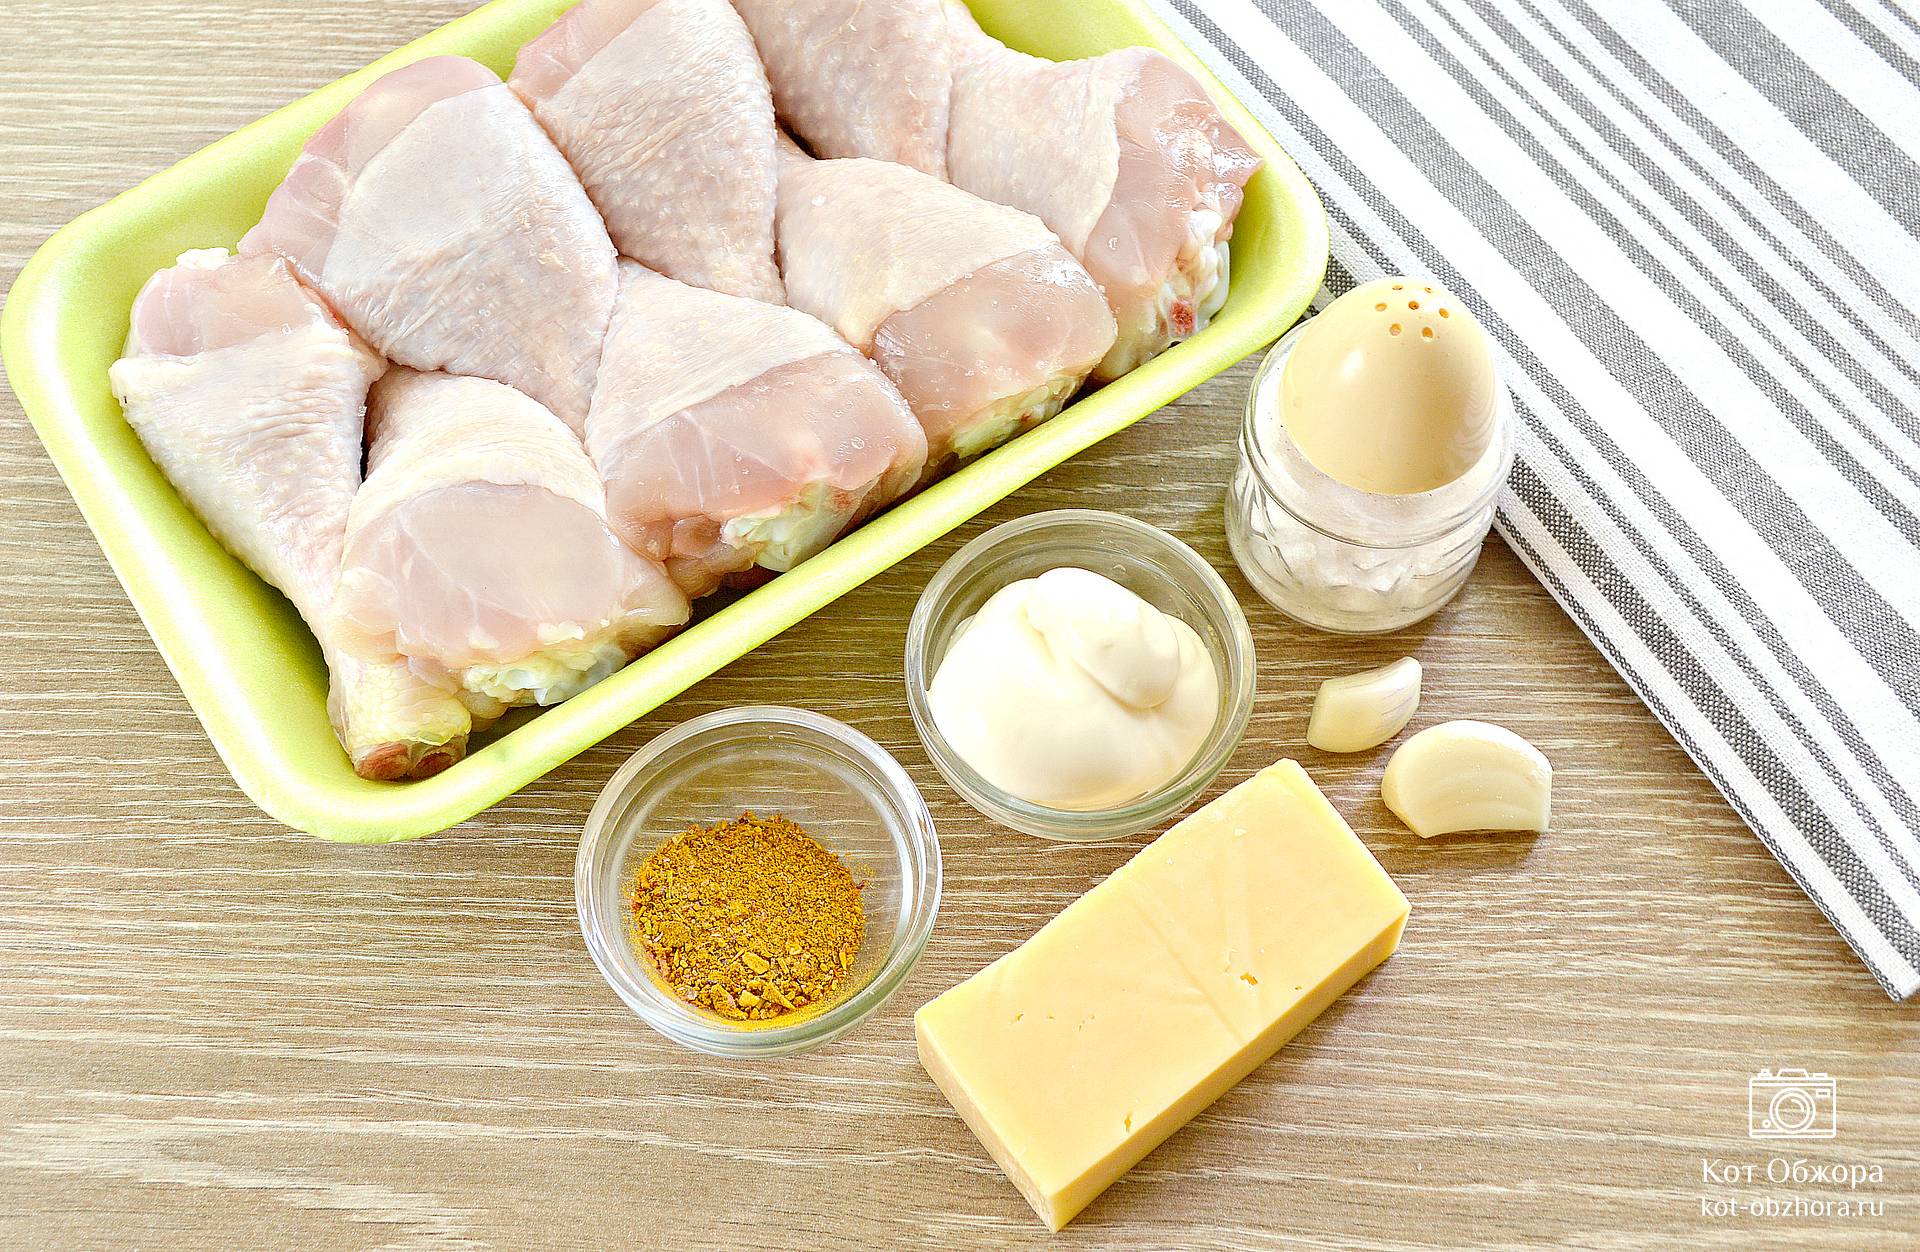 Куриные голени, фаршированные сыром и беконом - рецепт приготовления с фото от натяжныепотолкибрянск.рф